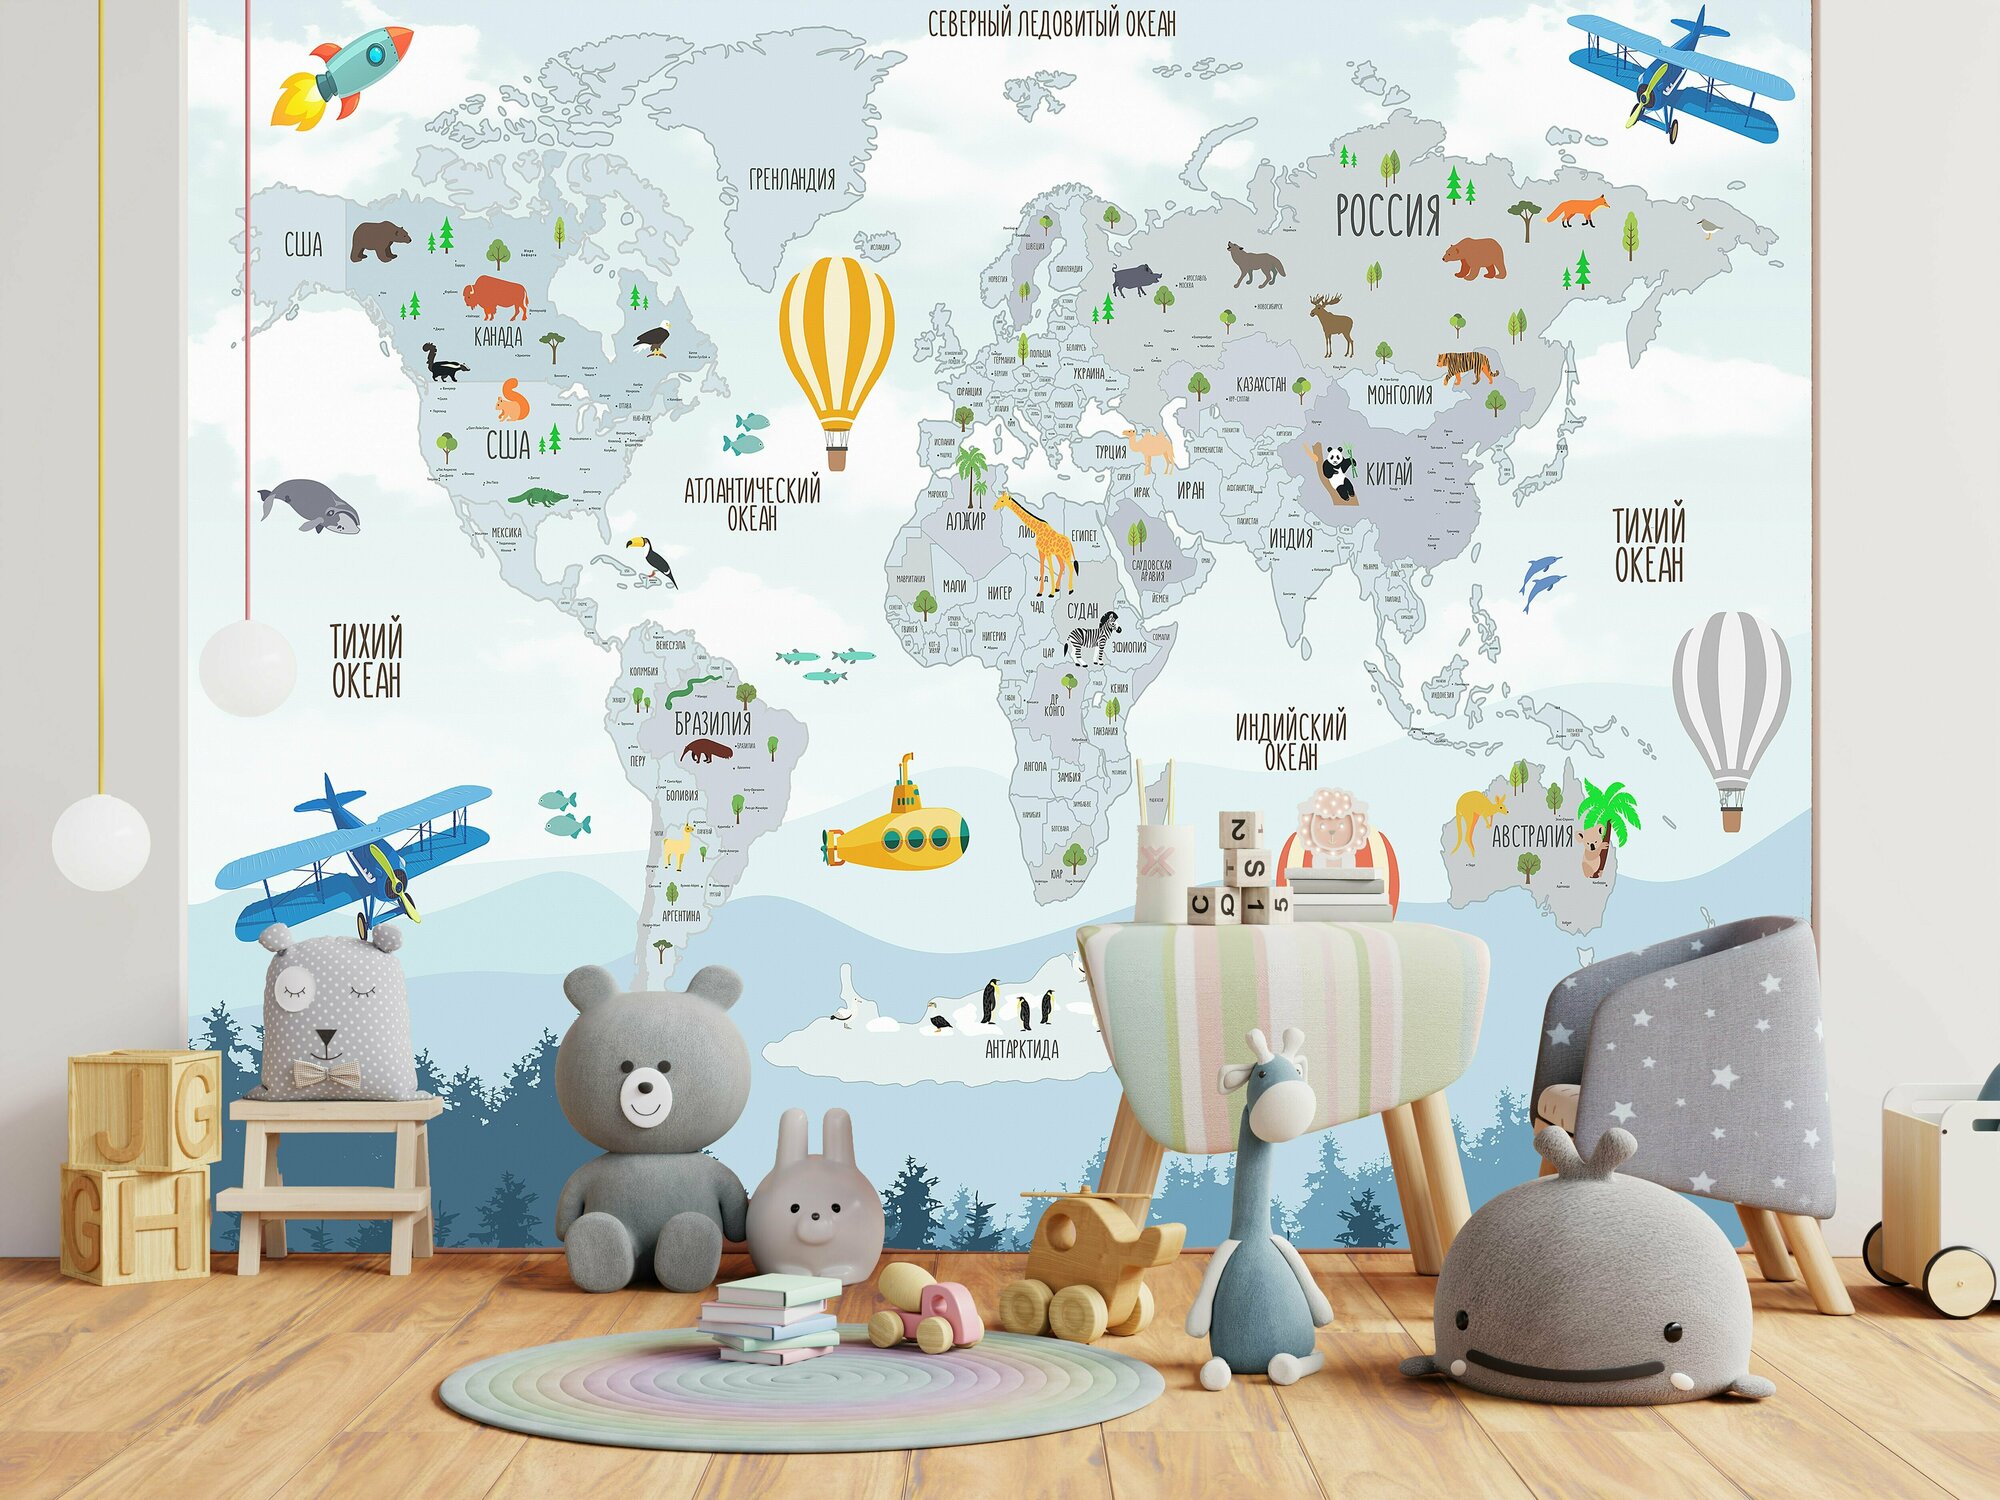 Фотообои на стену "Детская карта мира" флизелиновые 200х260 см.